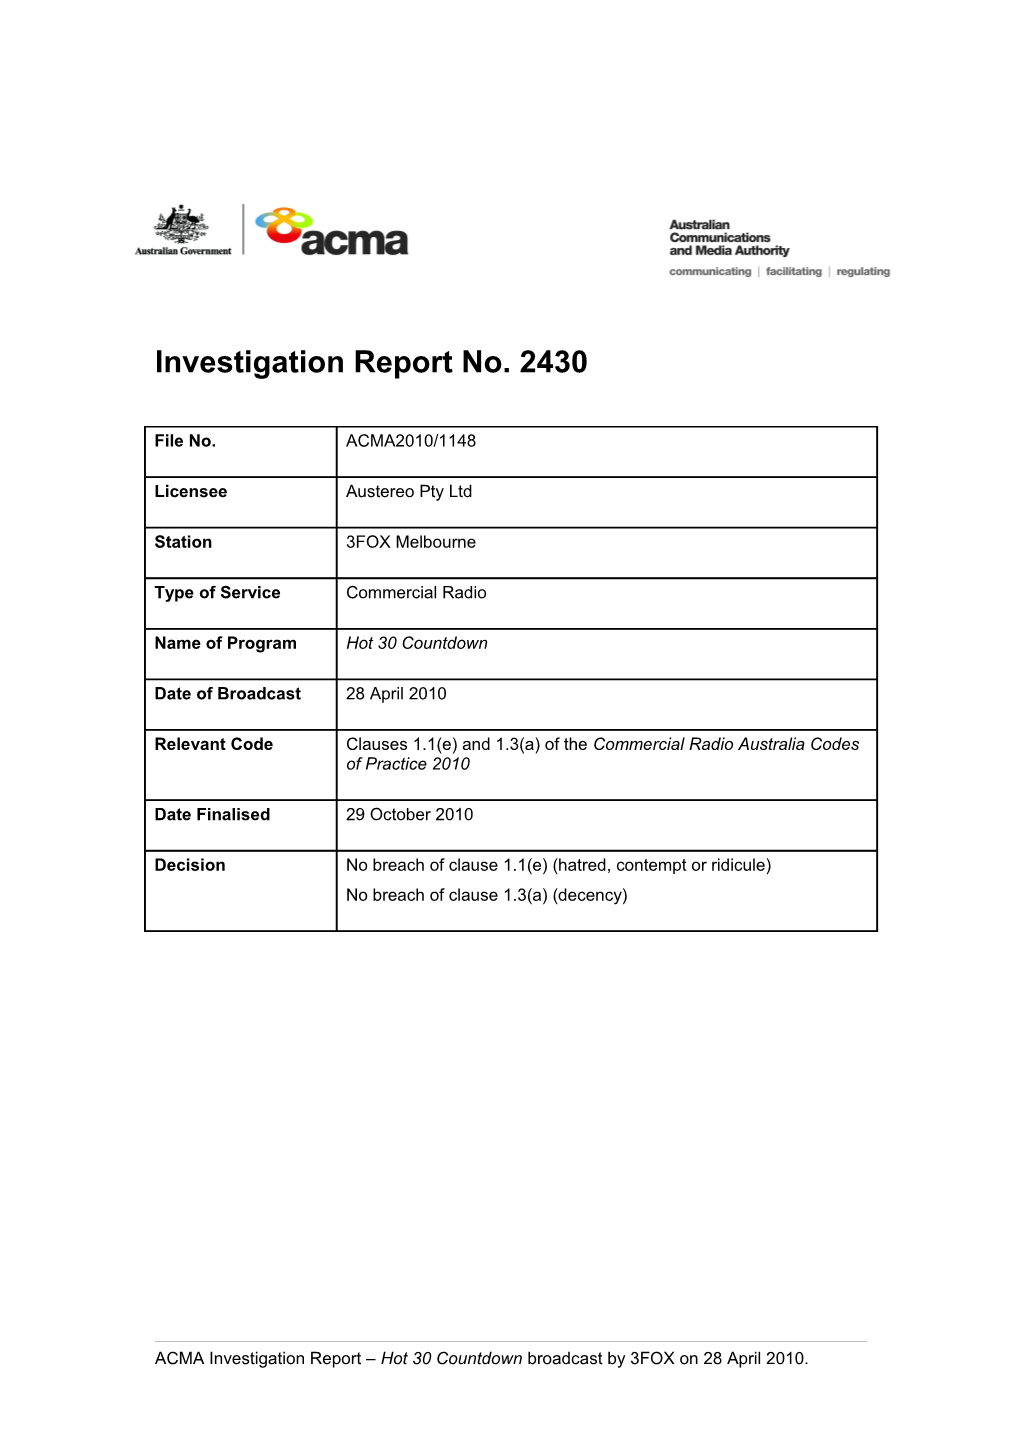 3FOC - ACMA Investigation Report 2430